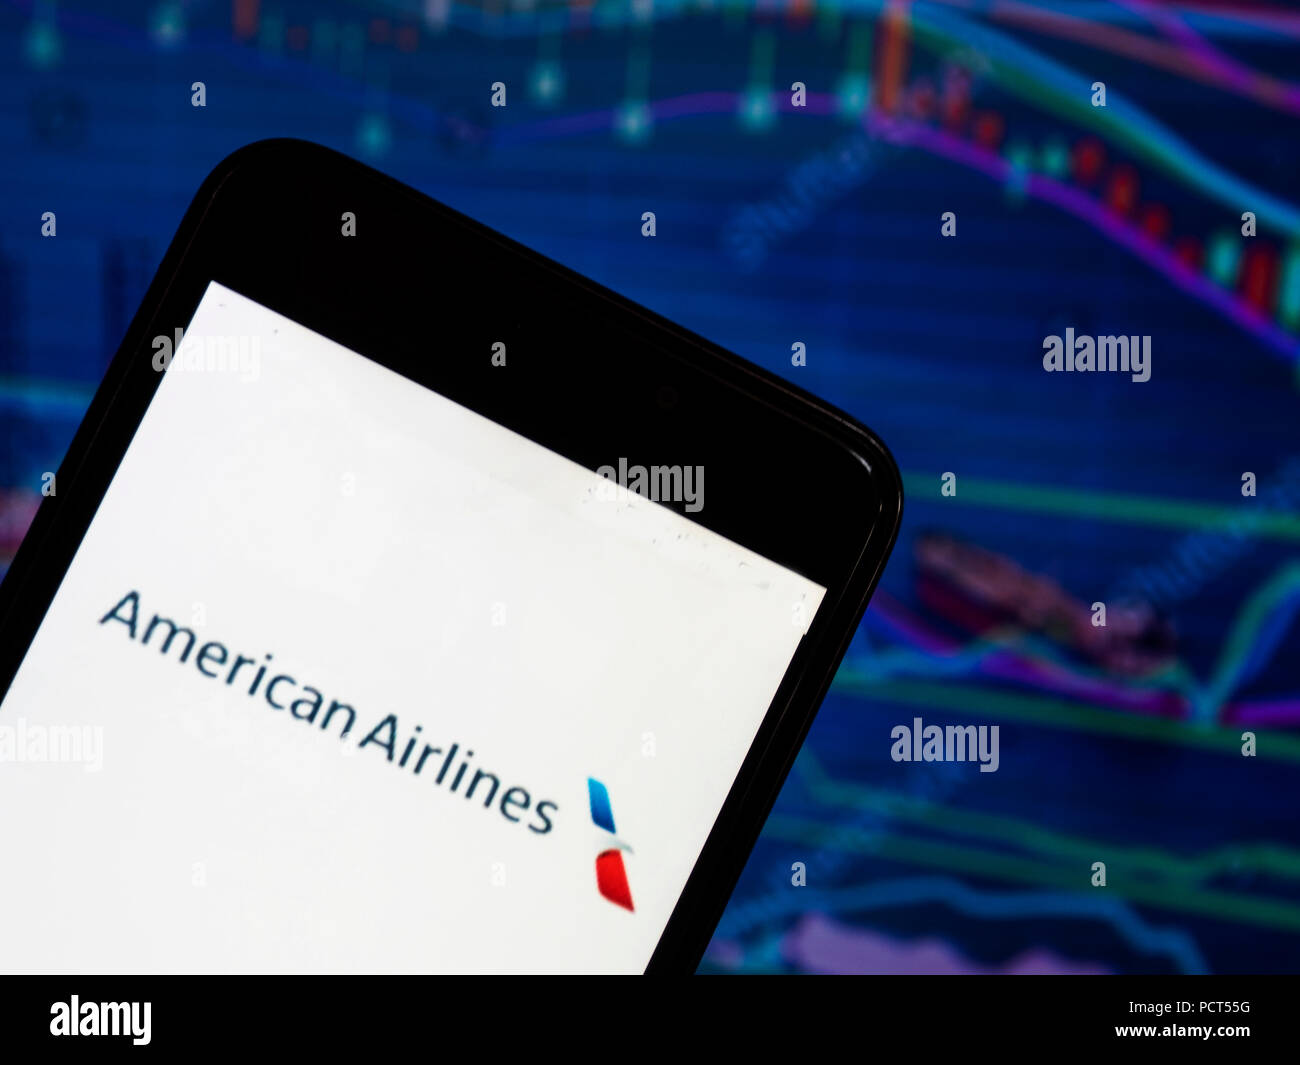 Kiew, Ukraine - August 4, 2018: Die American Airlines Logo angezeigt auf einem Smartphone mit dem Hintergrund einer Börse shedle. American Airlines, Inc. (AA) ist einer der wichtigsten USA Fluggesellschaft in Fort Worth, Texas, mit Hauptsitz in Dallas - Fort Worth Metroplex. Stockfoto